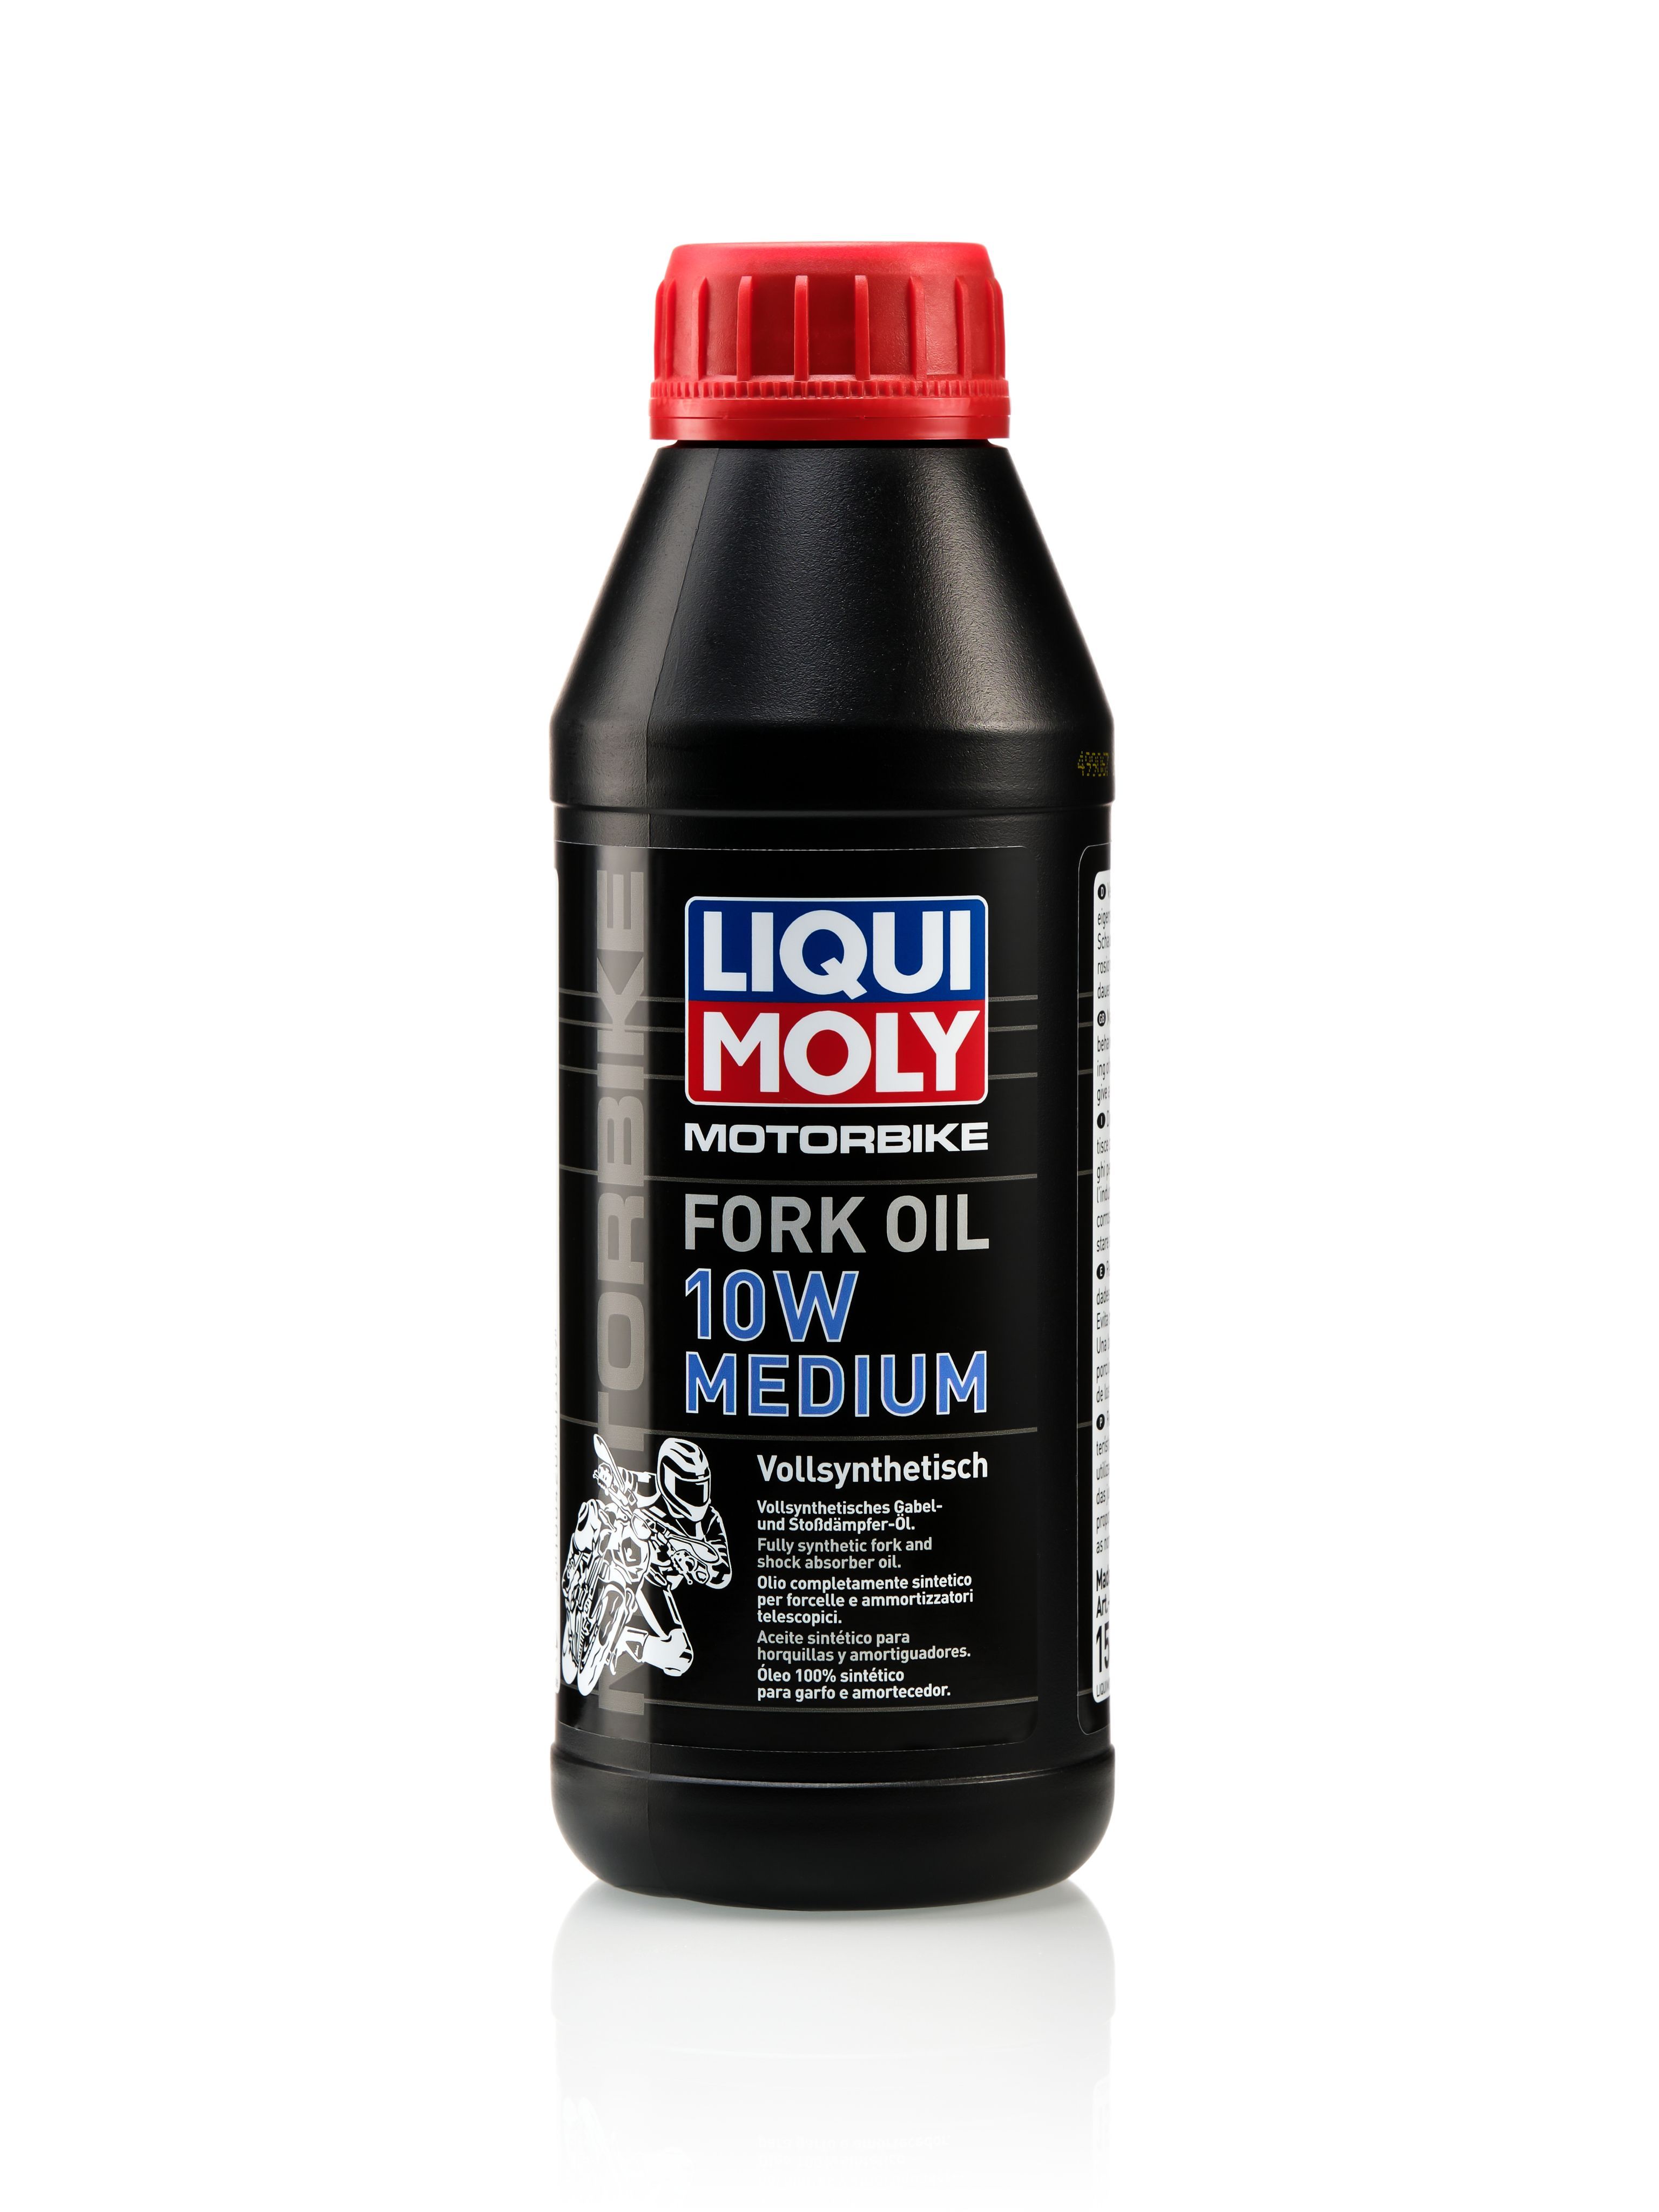 Проверить масло Motul fork Oil 10w Medium. Liqui Moto NB 300. Масло для мотоцикла ликви моли